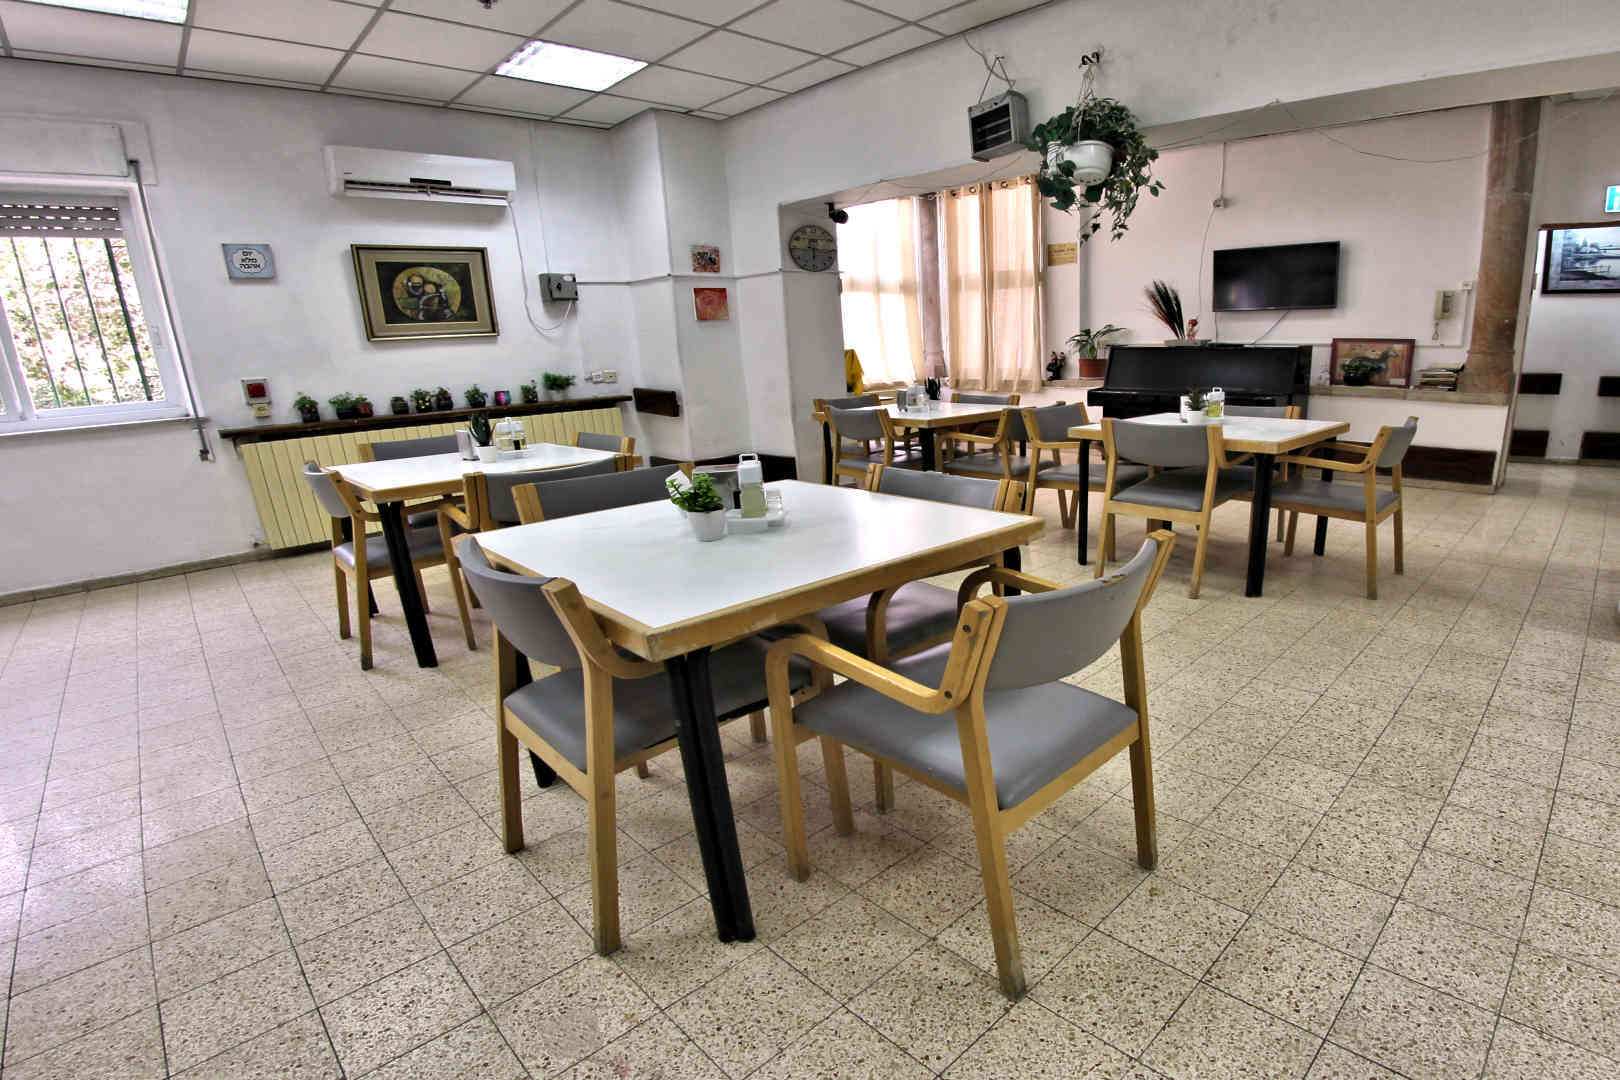 
						בית אליסיה – בית אבות בירושלים חדר אוכל					